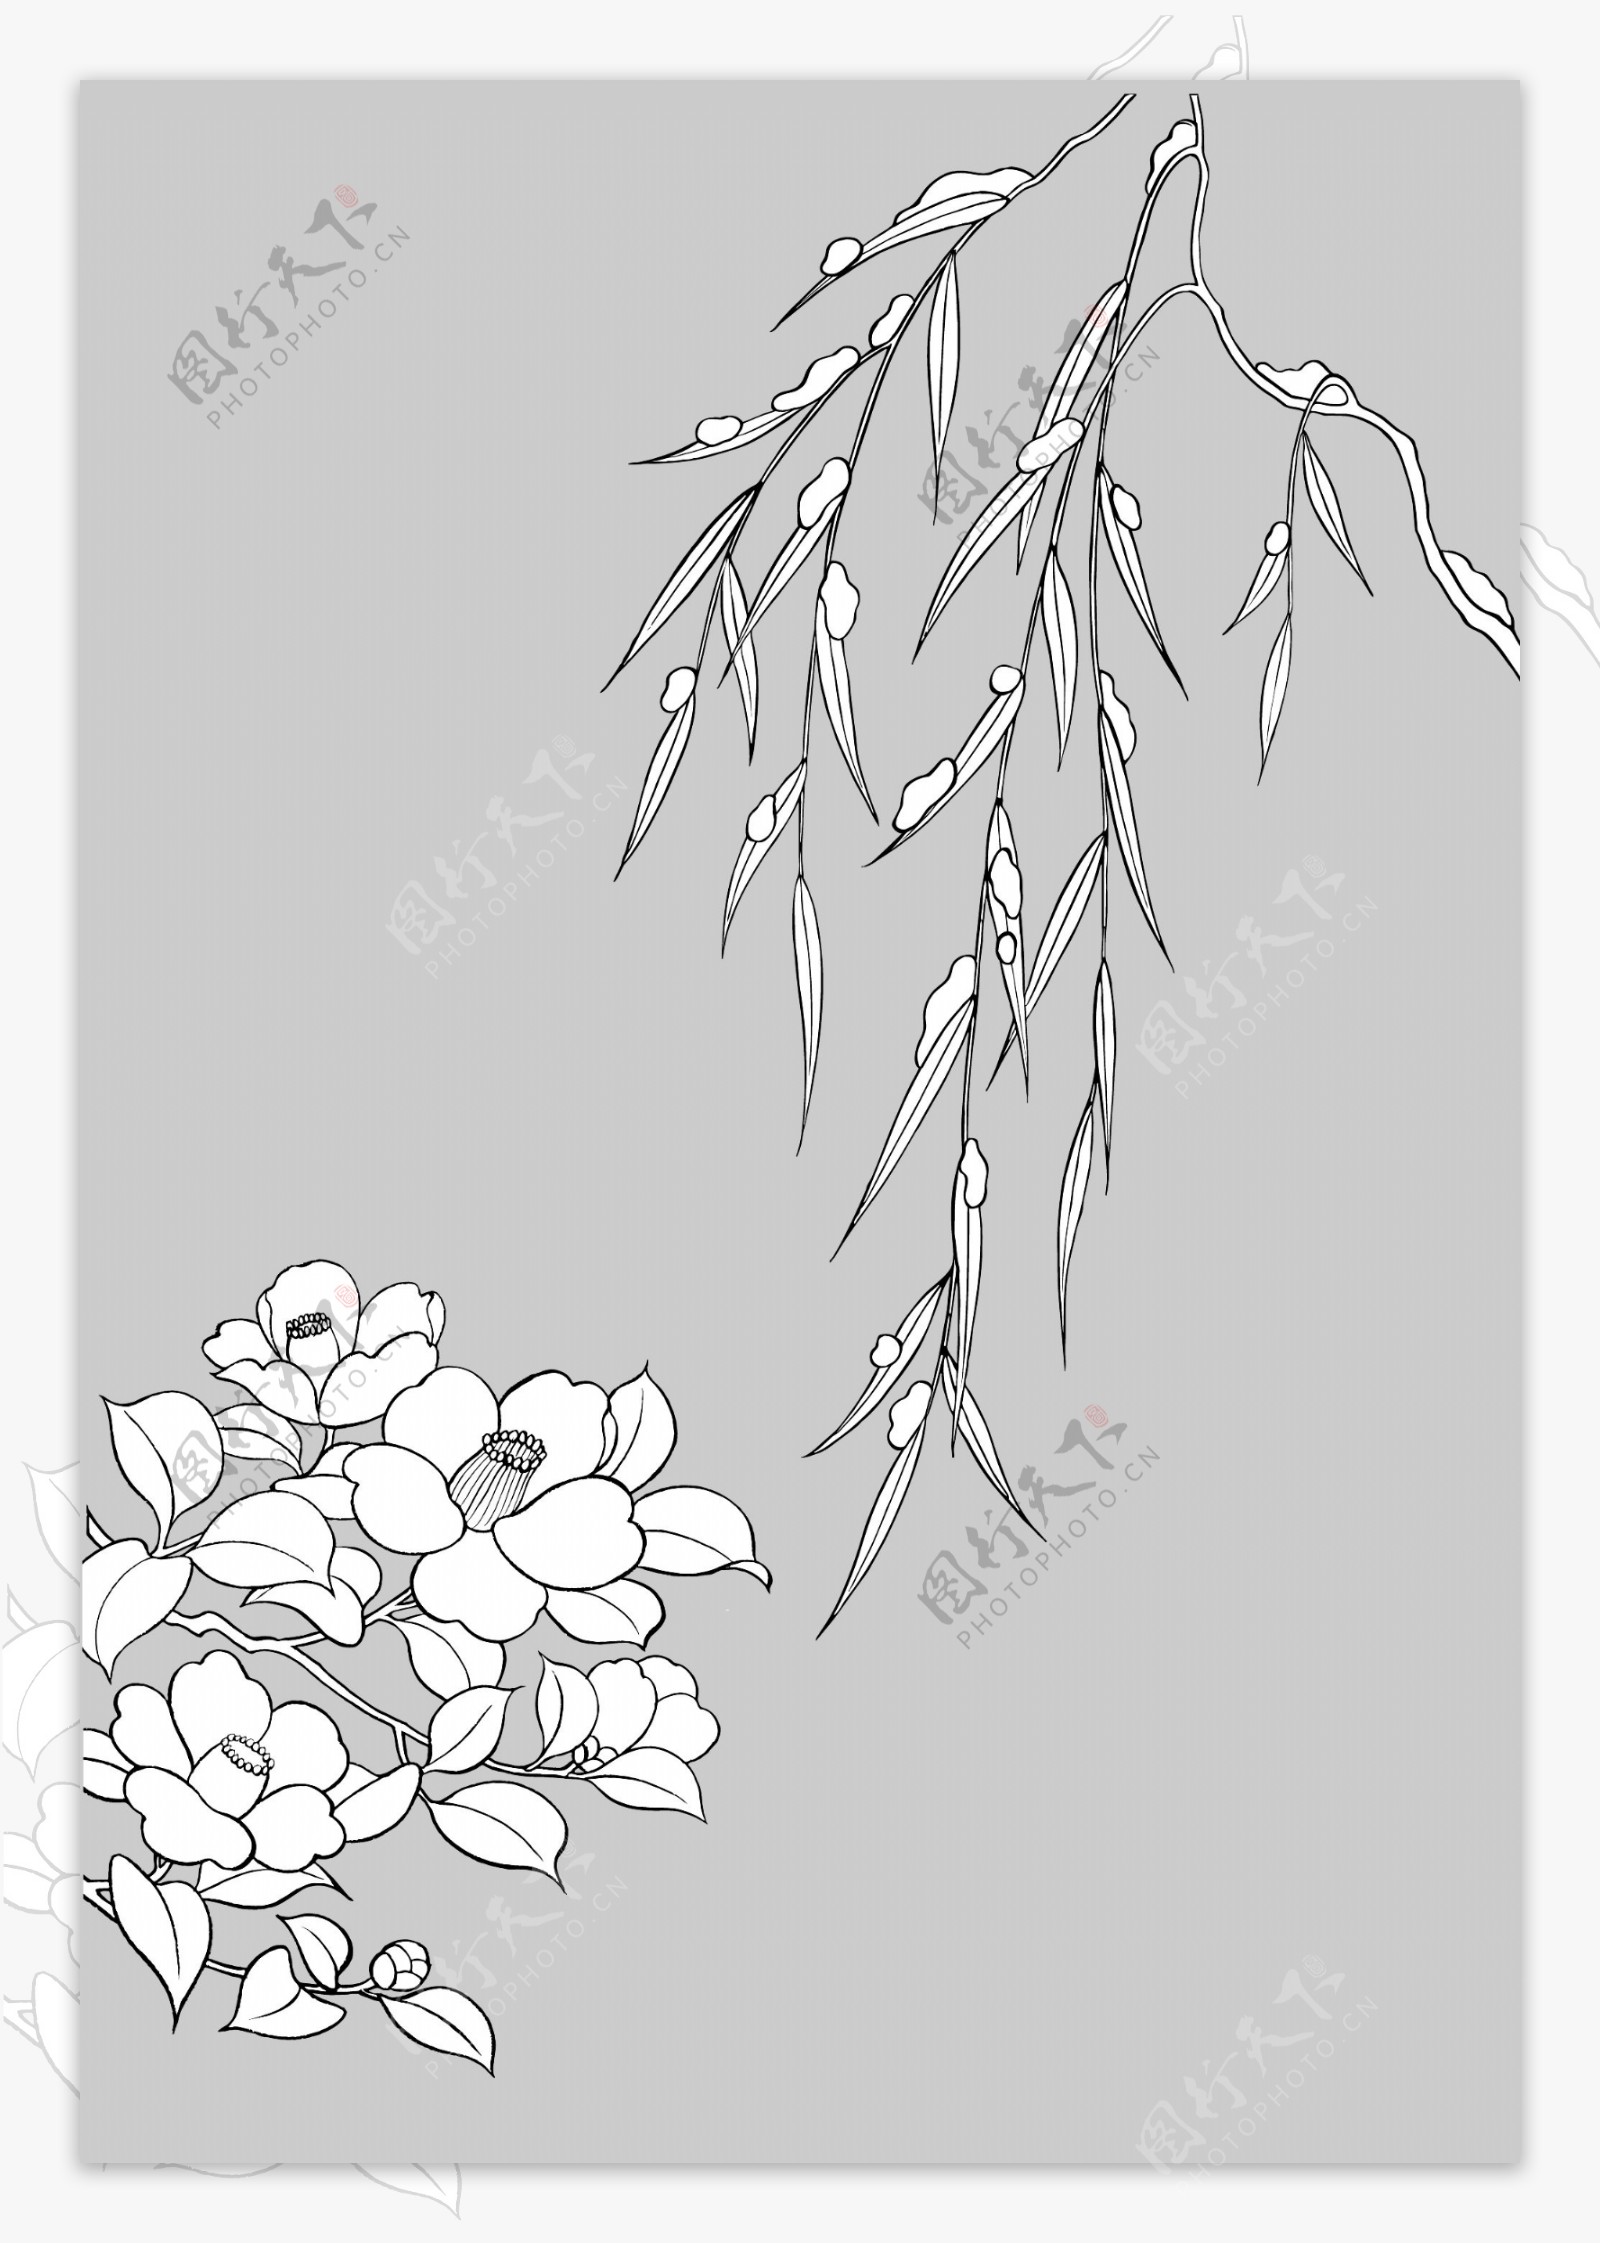 线描植物花卉矢量素材16柳树枝与椿.